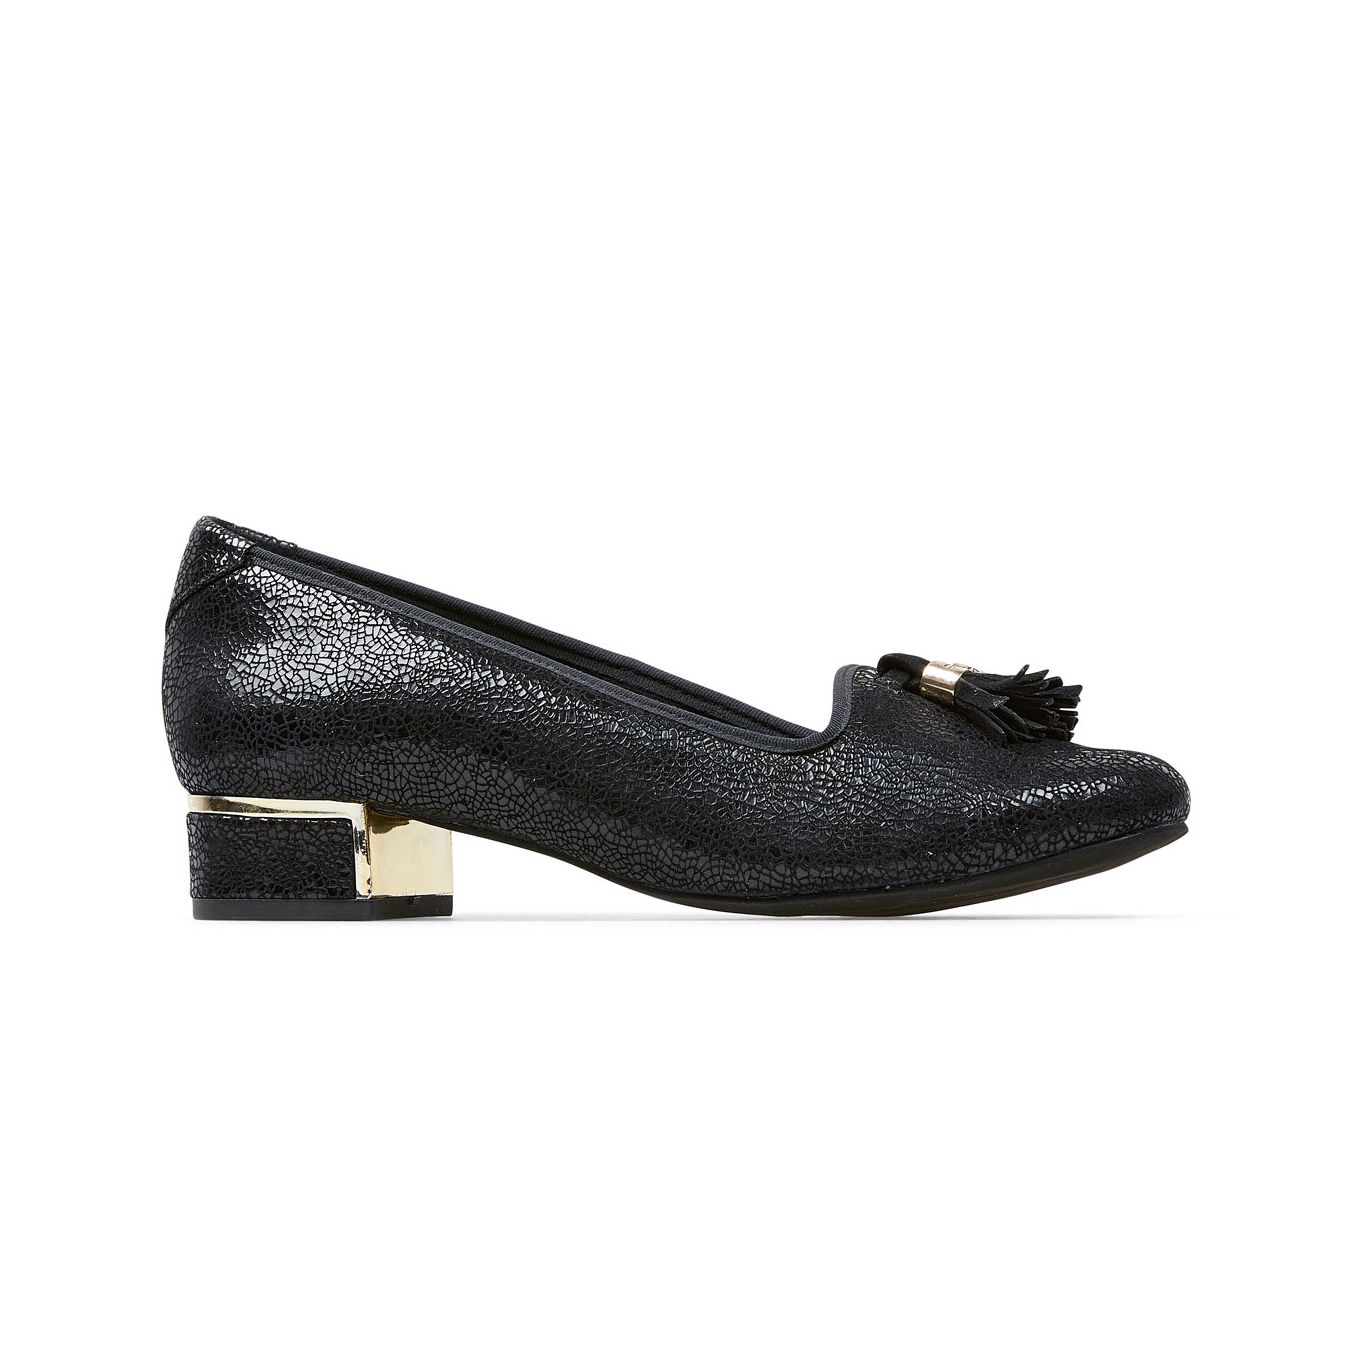 Van Dal Thurlo 3083 Ladies 1305 Black Feature Court Shoes